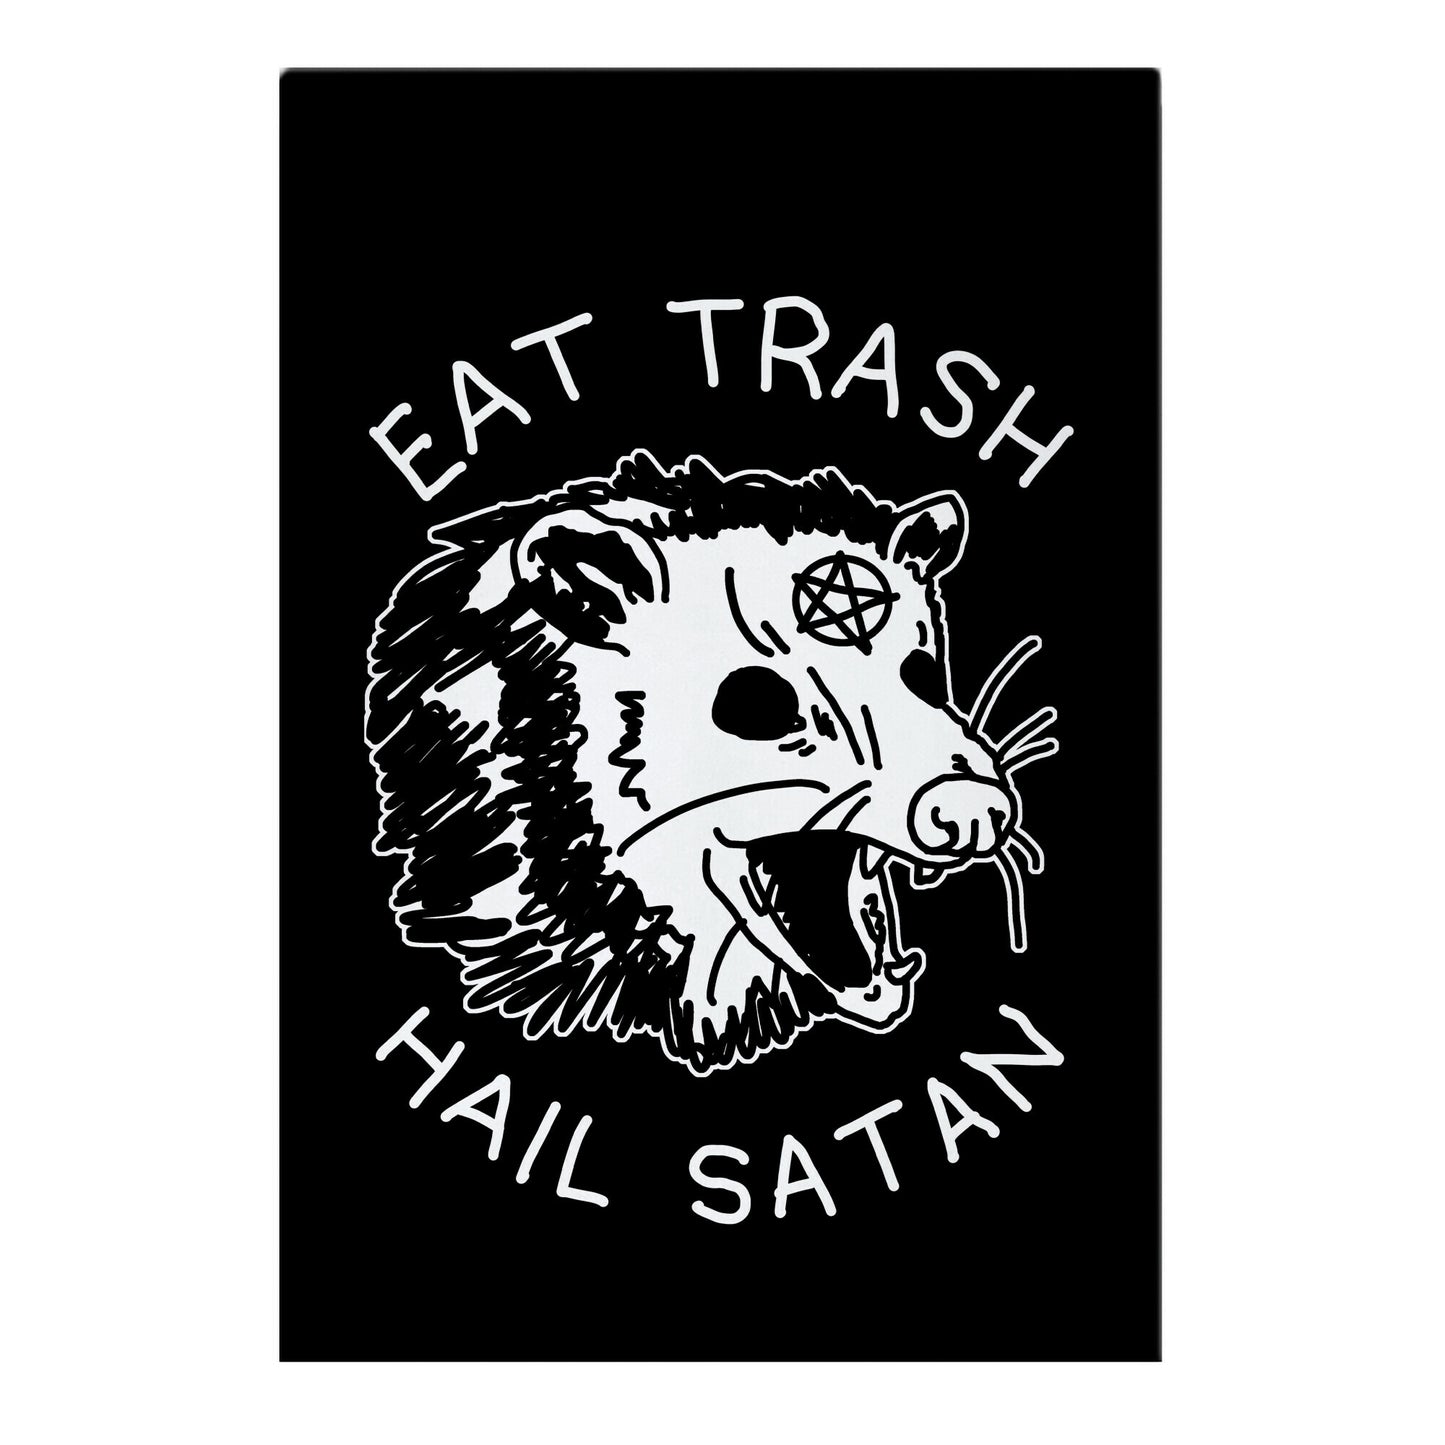 Eat Trash Hail Satan Possum Garden Flag